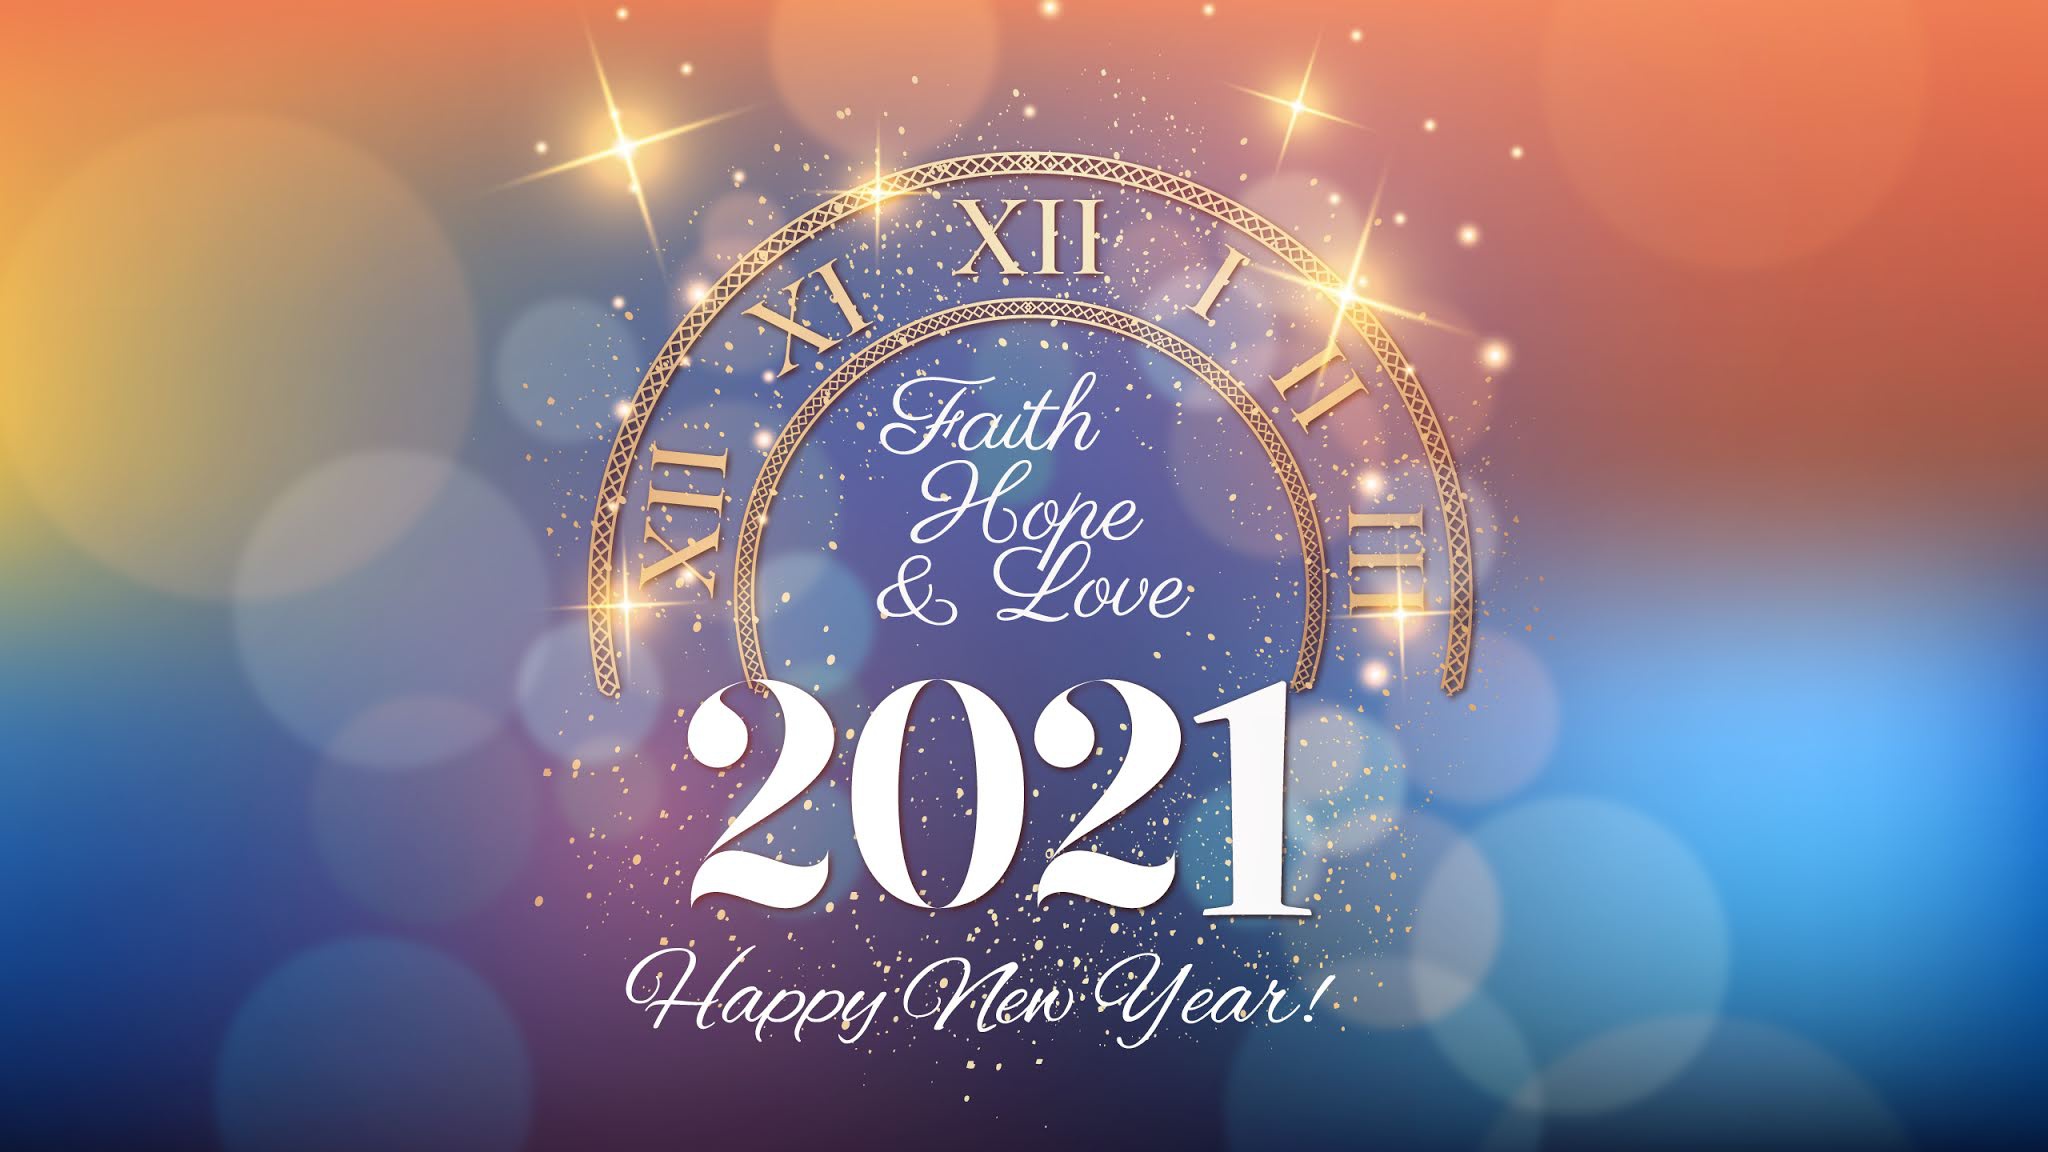 Новый год 2021 сайт. С новым годом 2021. Обои на новый год 2021. Счастливого нового года 2021. Новогодние обои Happy New year.